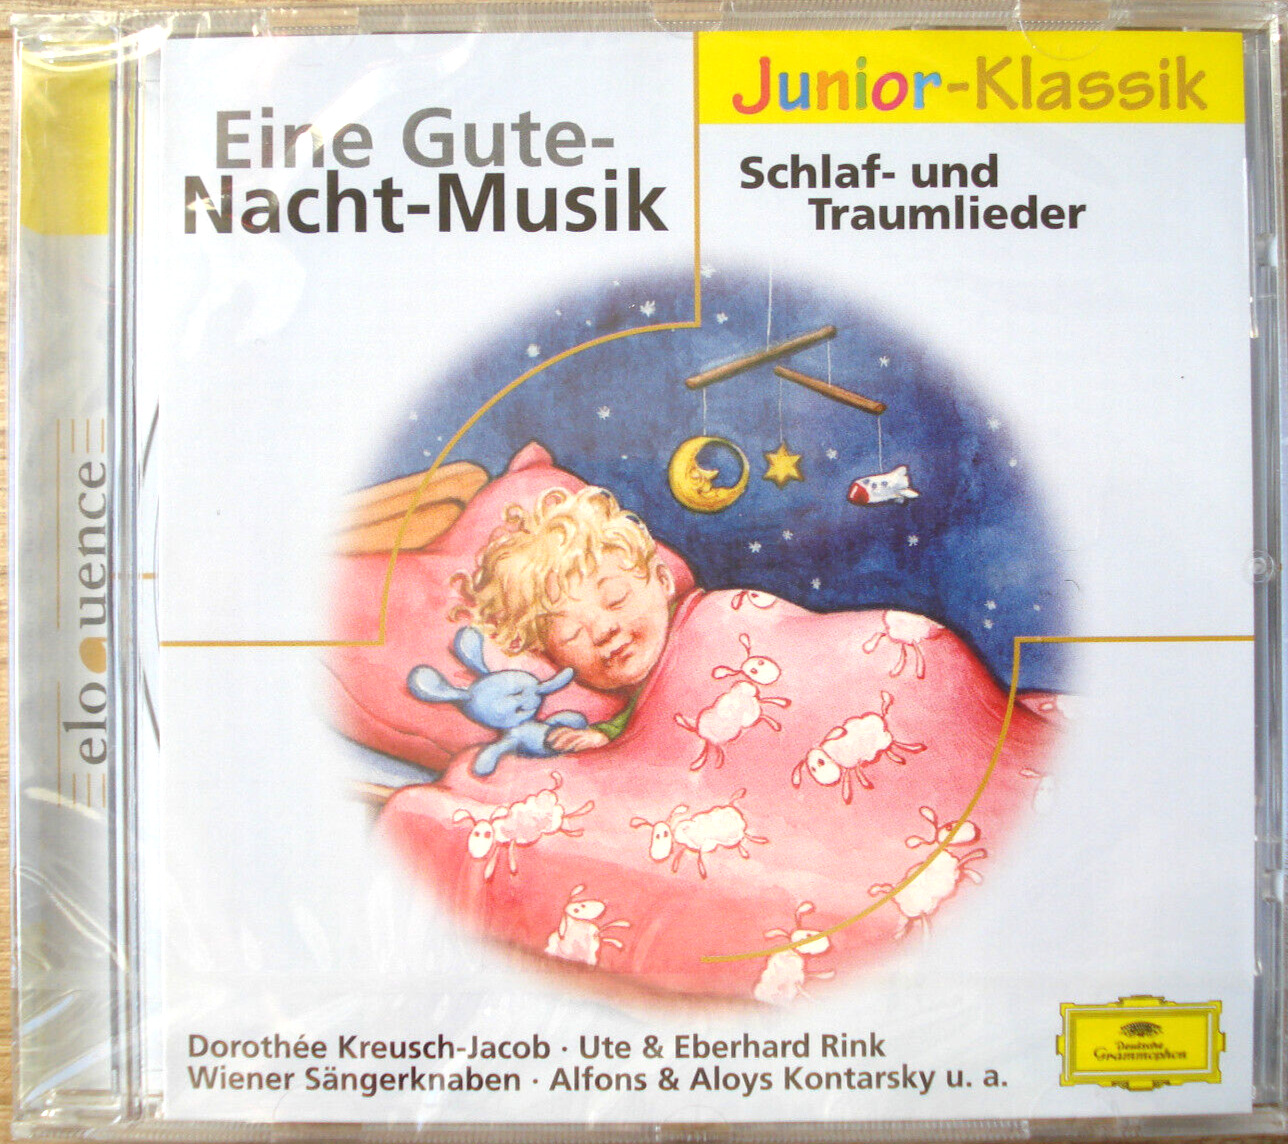 OVP neu Eine Gute-Nacht-Musik Schlaf- und Traumlieder CD - Kreusch-Jacob u.a.